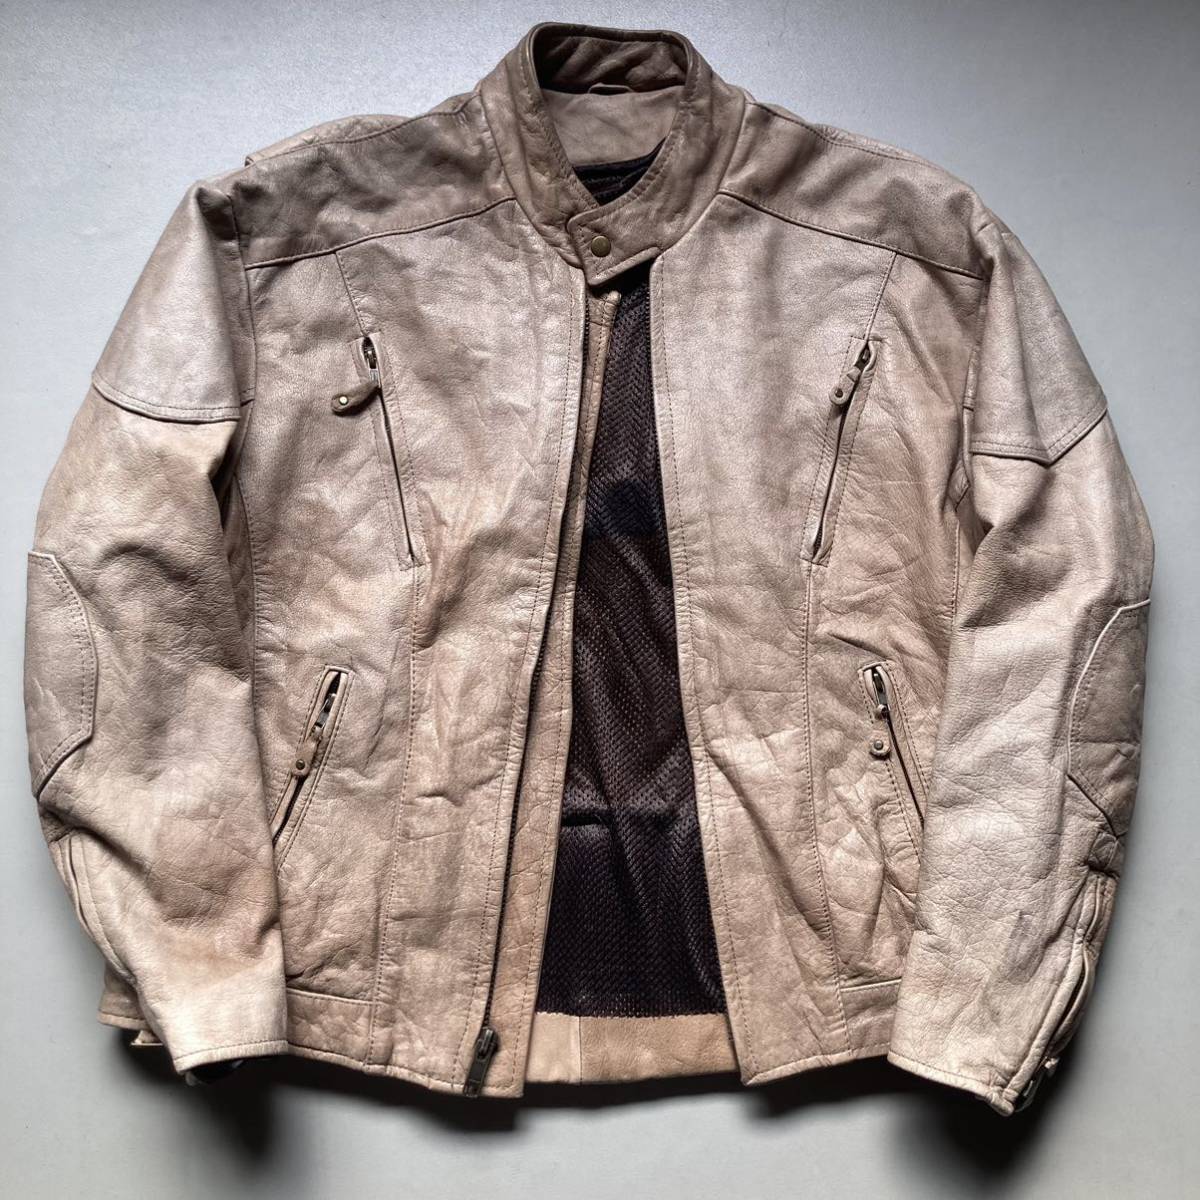 逆八の字 beige/brown leather jacket レザージャケット 革ジャン 裏地メッシュ_画像2